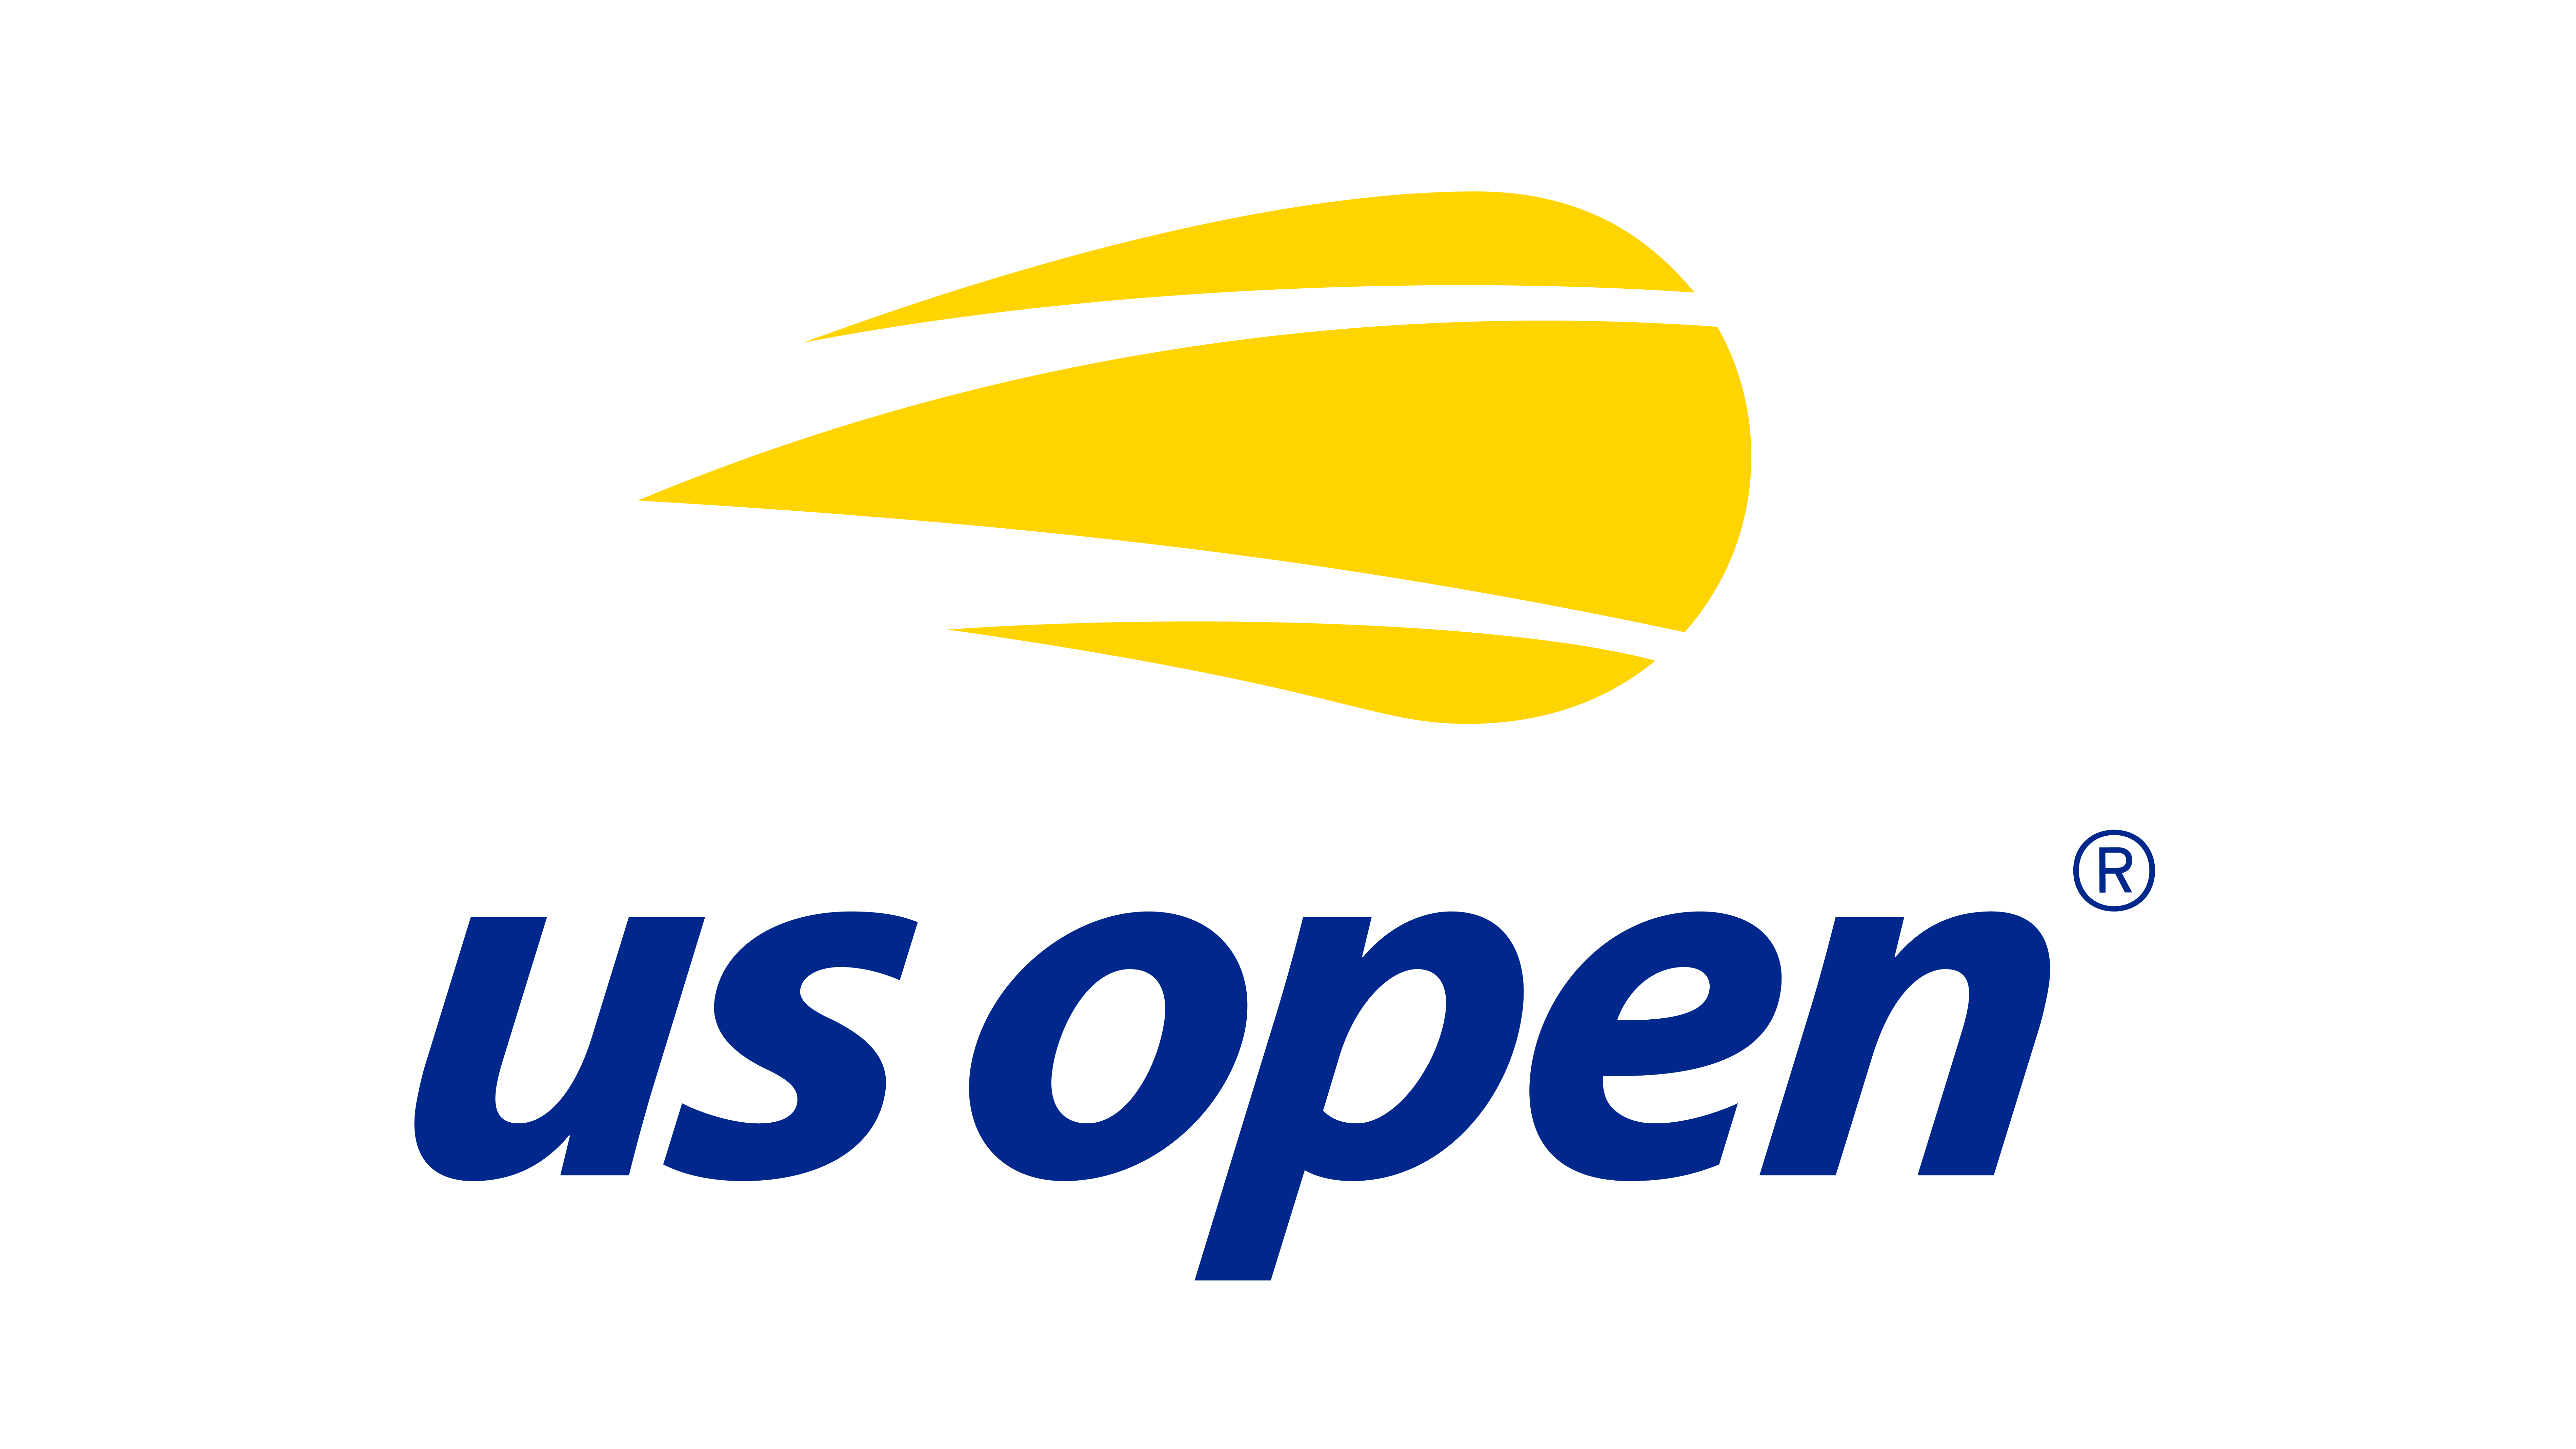 US Open logo